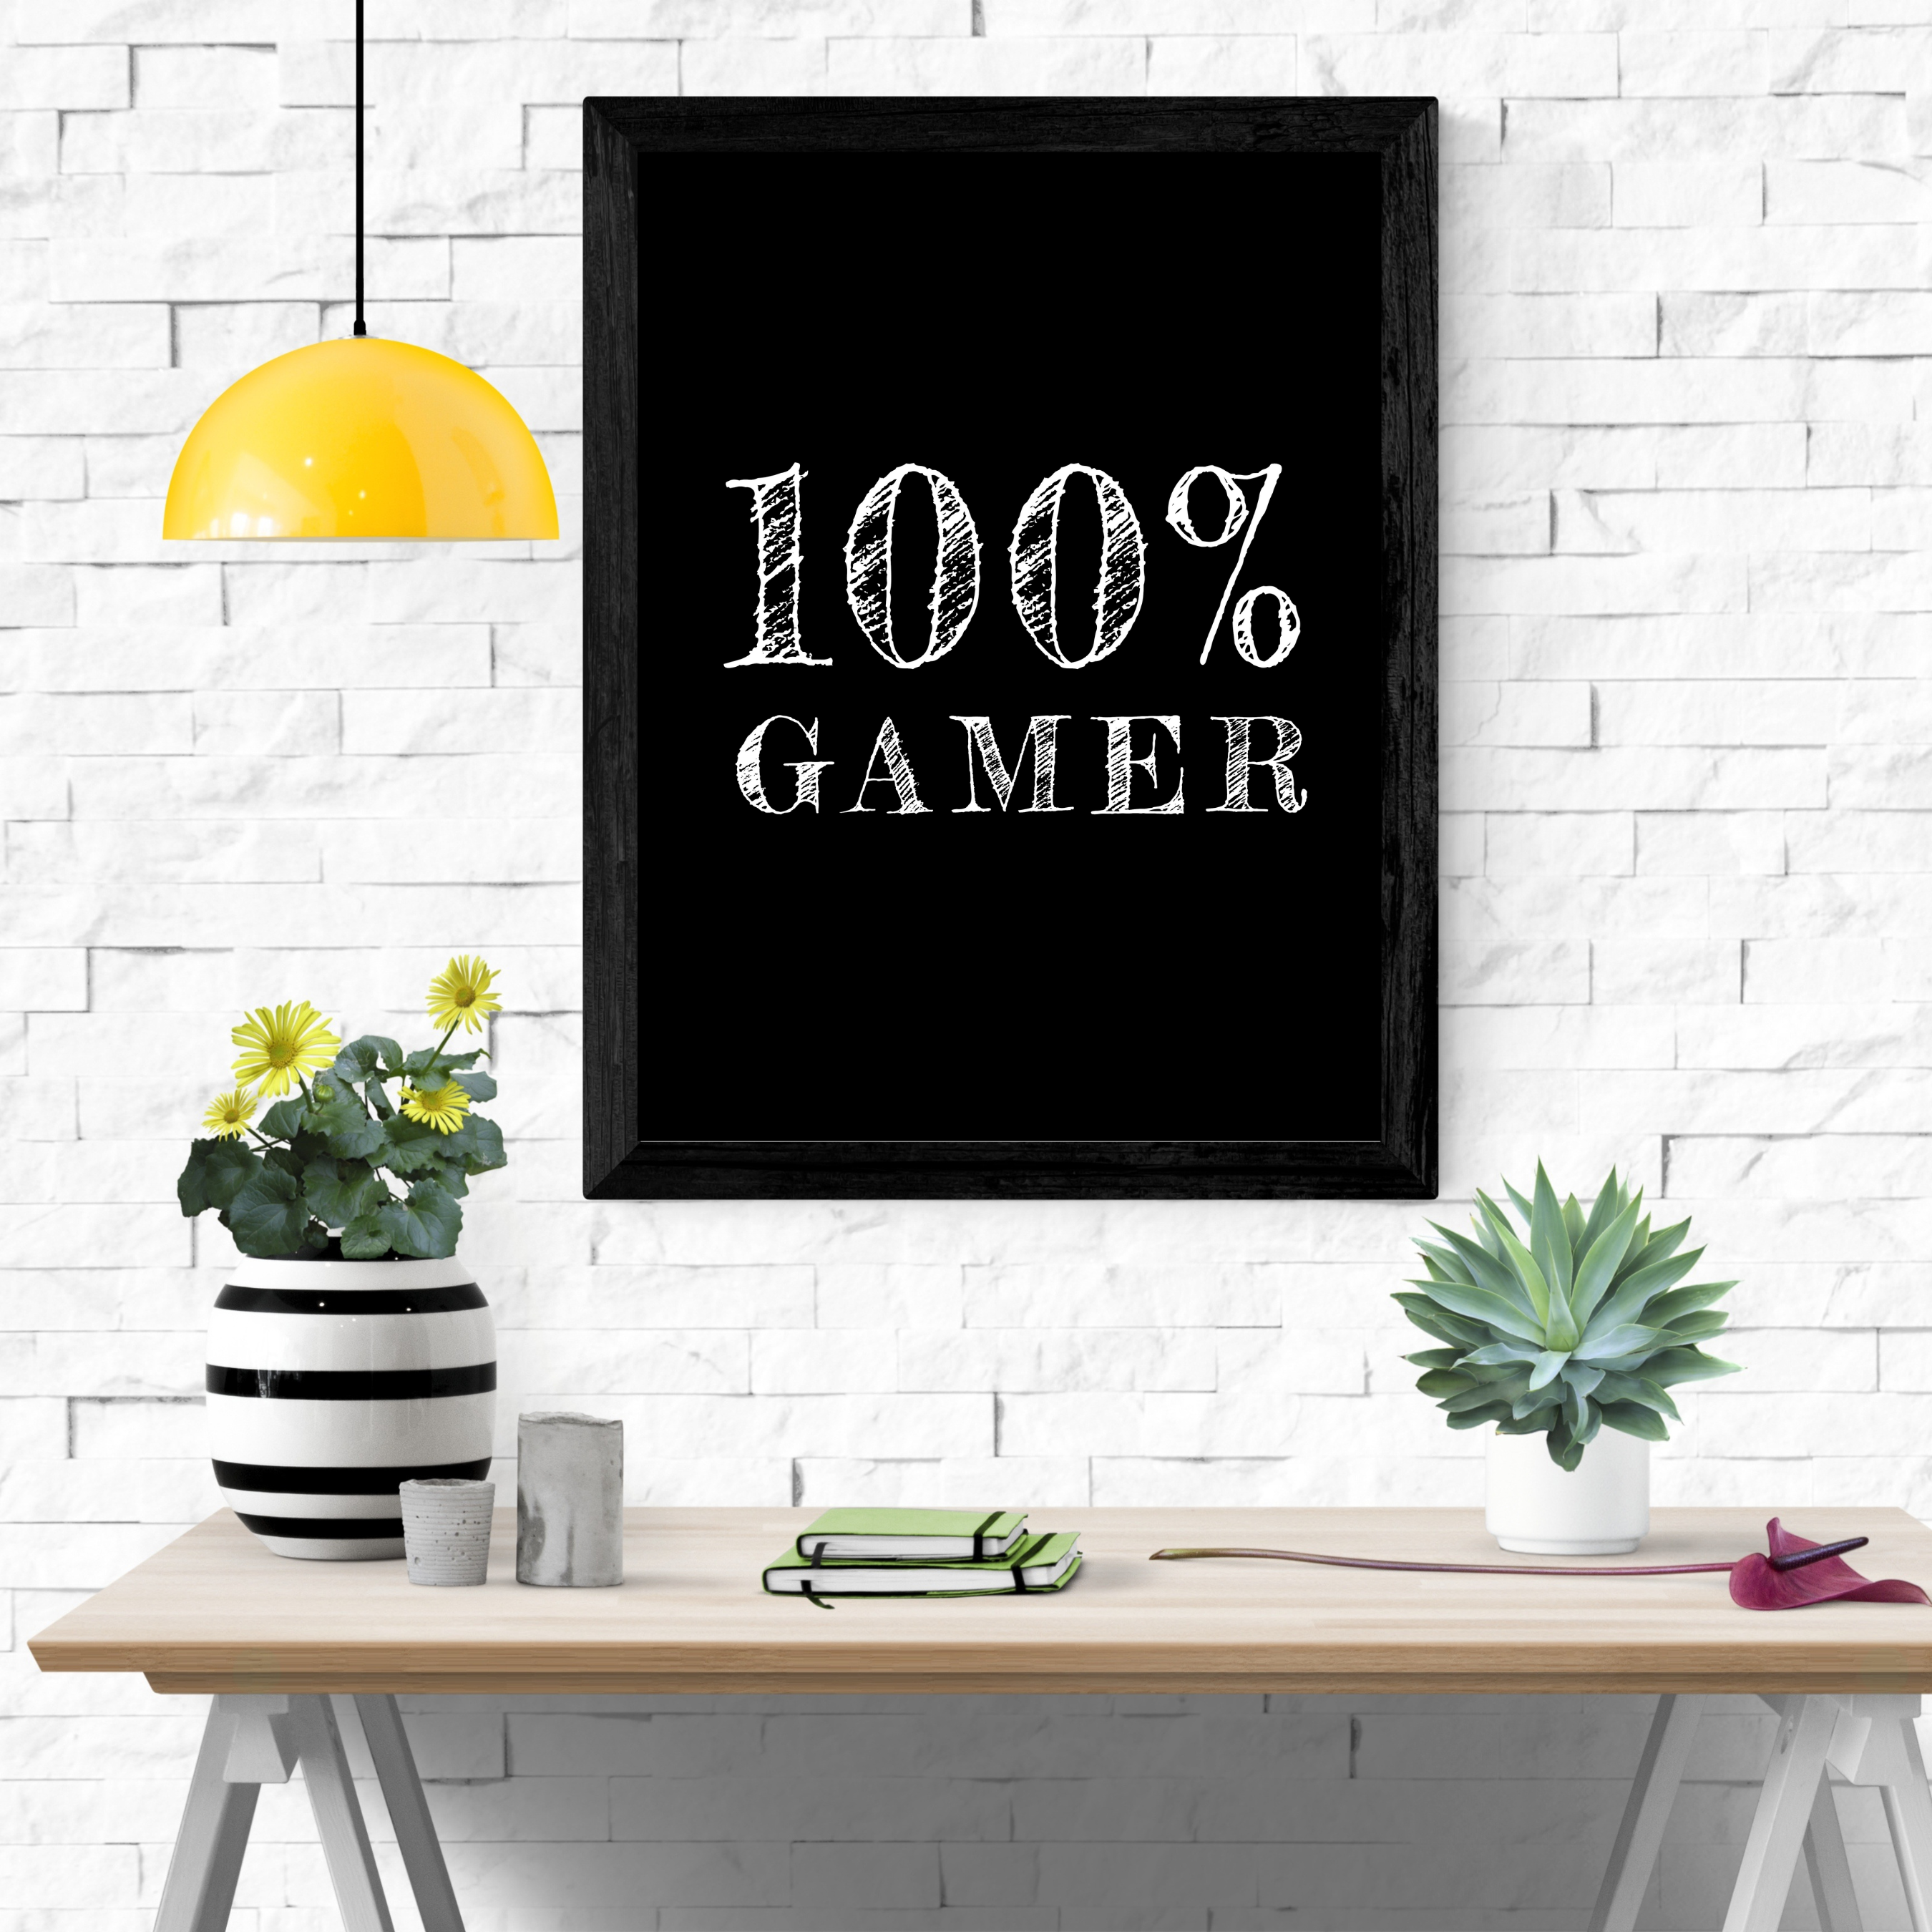 100% Gamer 2 - Sort  (Plakat)